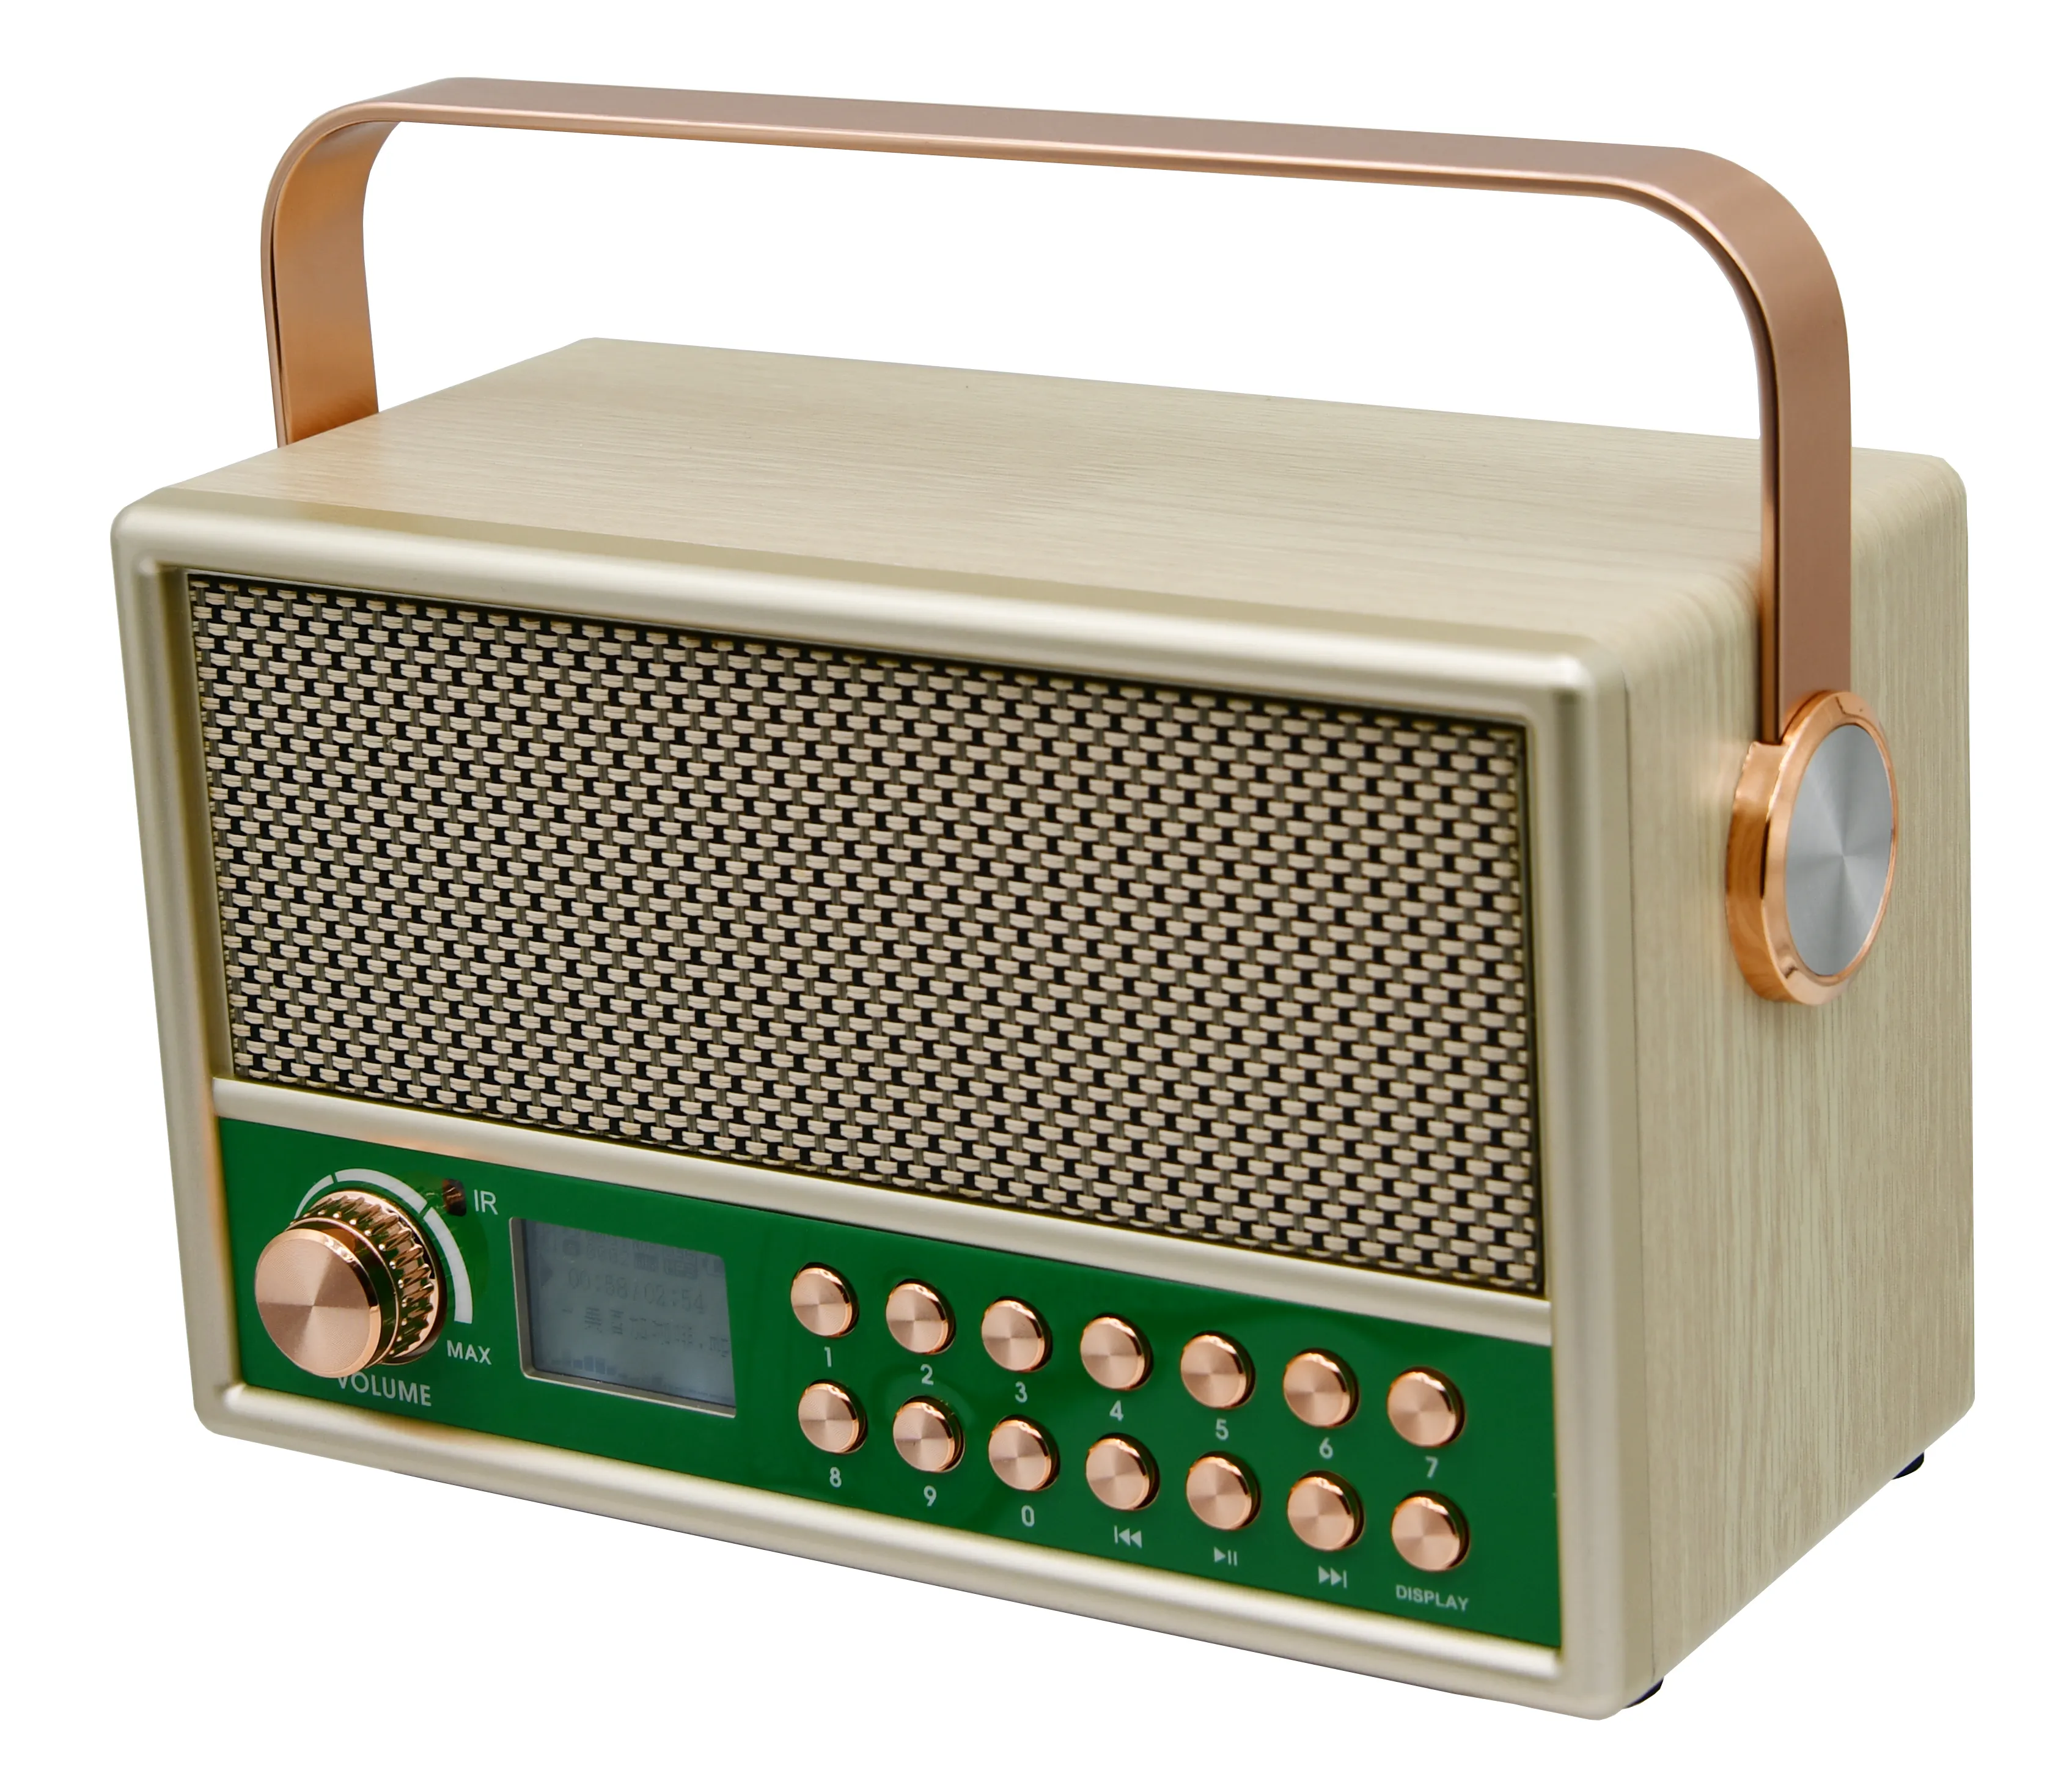 HS-2668 Neu kommende Retro Holz lautsprecher FM Radio wiederauf ladbare Led Display Lautsprecher mit Fernbedienung